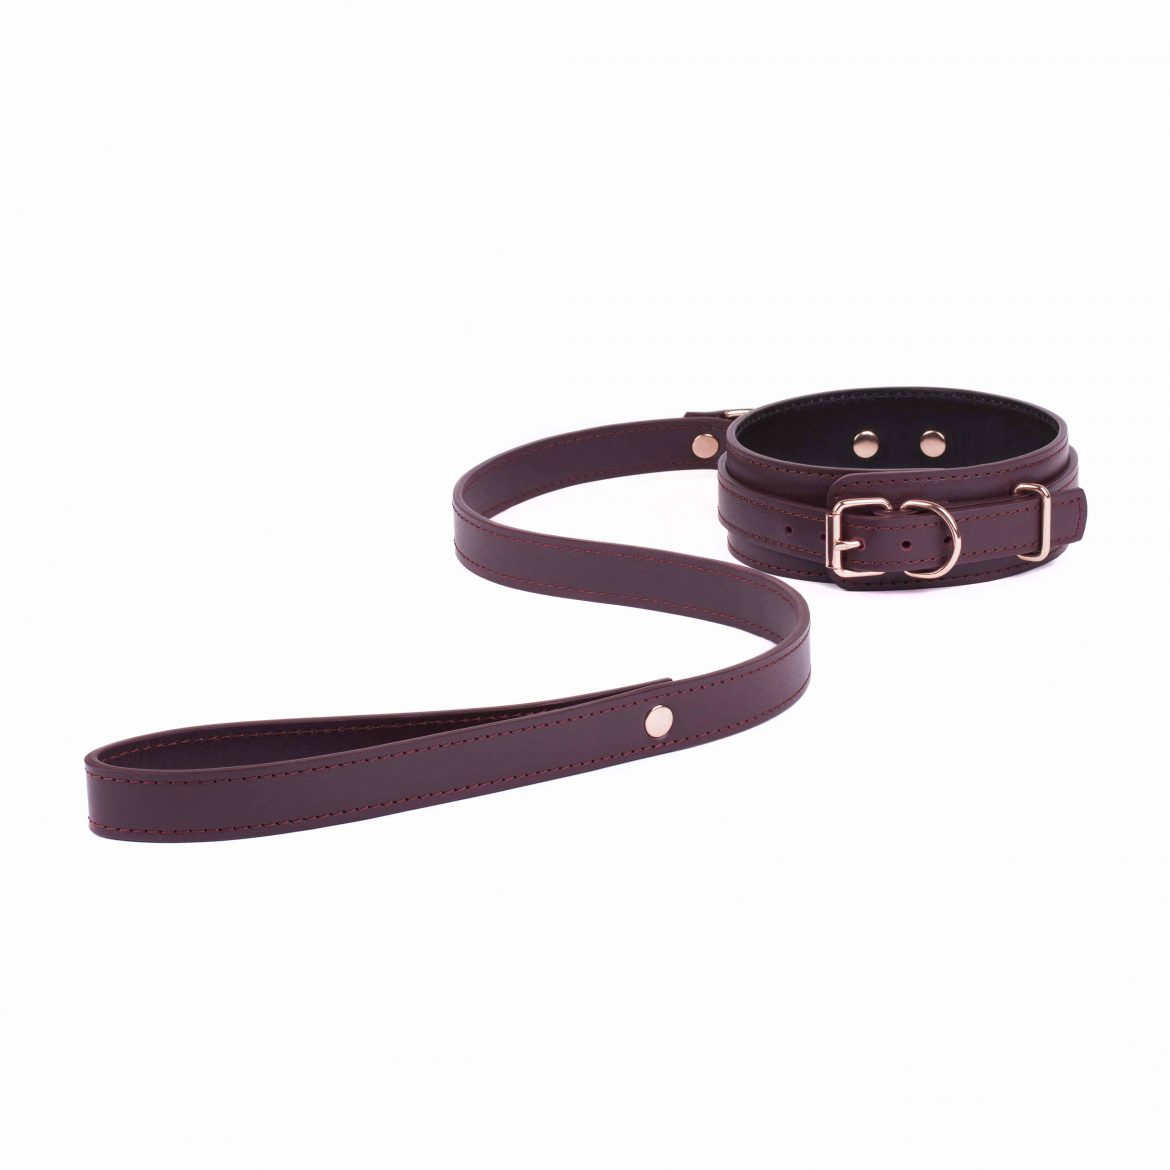 BDSM leather Bondage set collar and medium leather leash 19 scaled